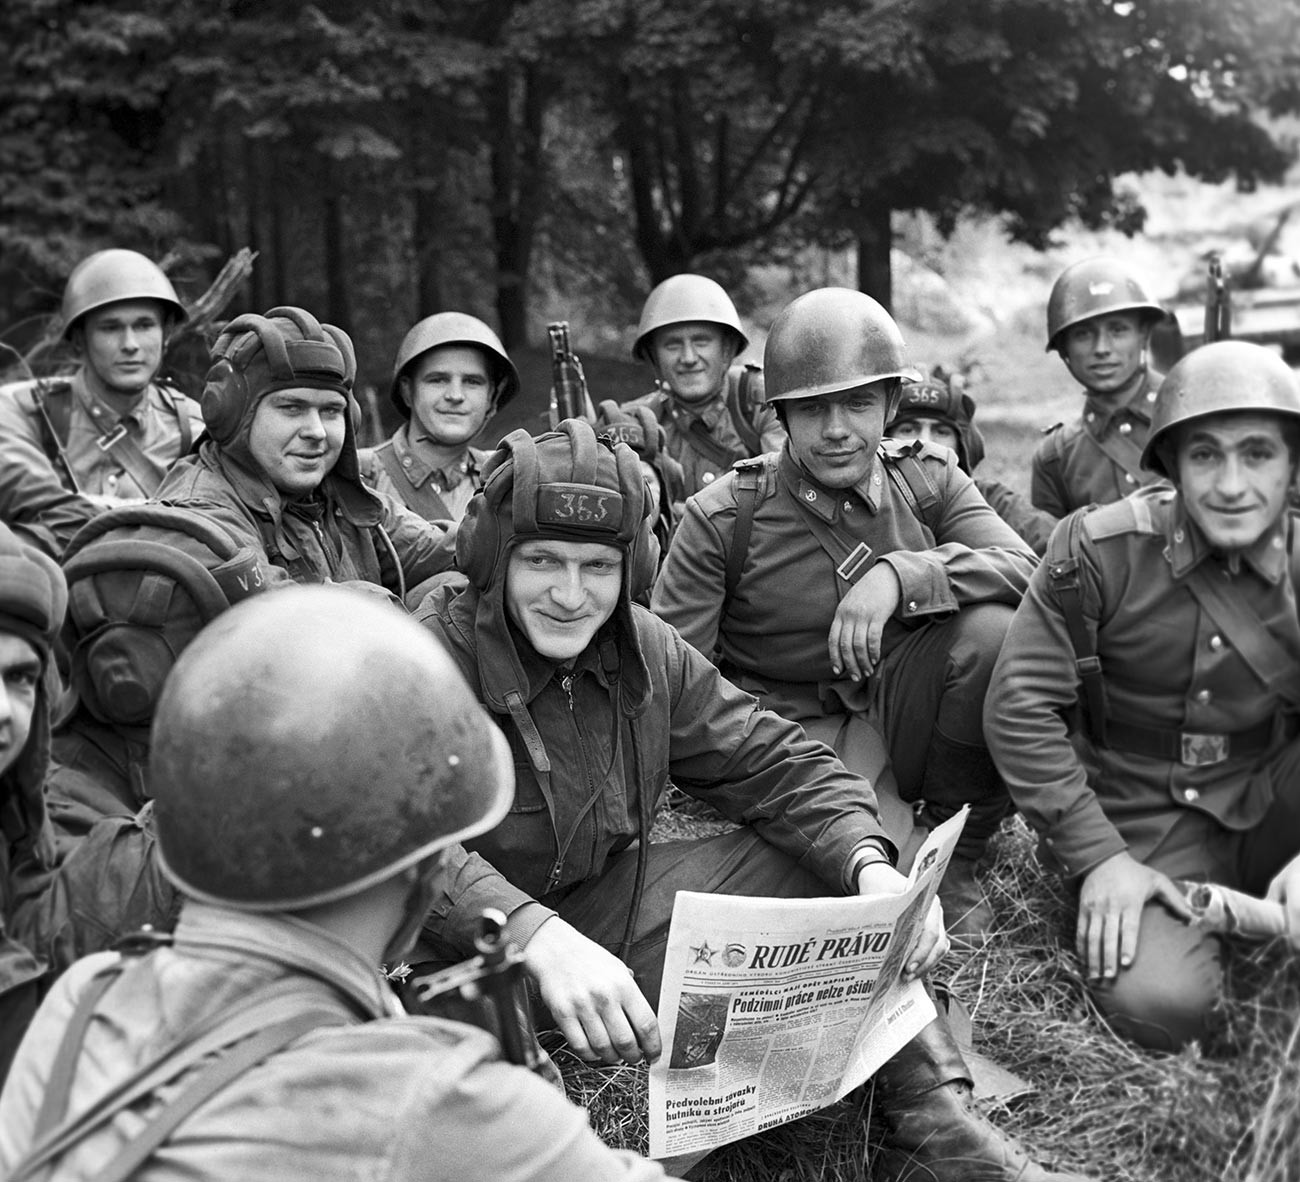 Carristi cecoslovacchi e soldati sovietici durante un’esercitazione congiunta. Si noti la copia di “Rudé právo” (“Legge Rossa”) il principale quotidiano comunista cecoslovacco
